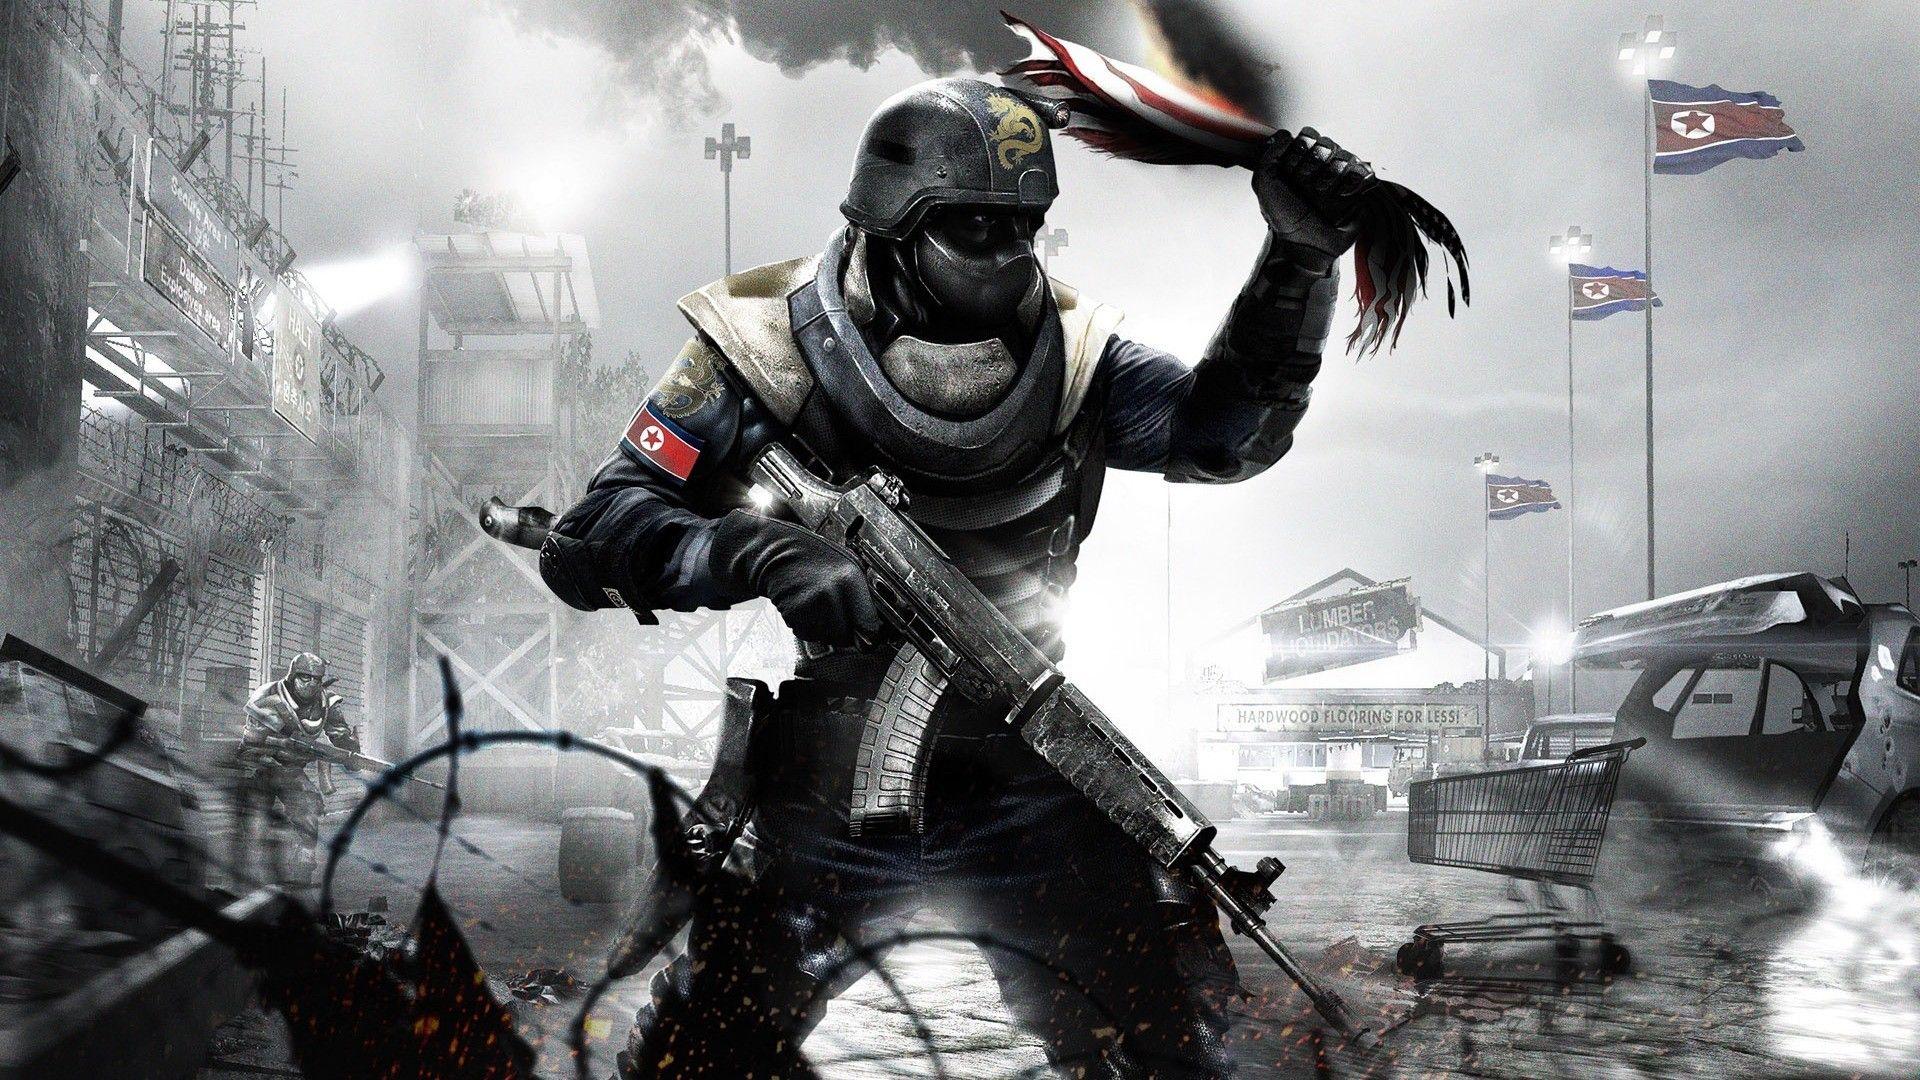 Dark Soldier Wallpapers - Top Free Dark Soldier Backgrounds